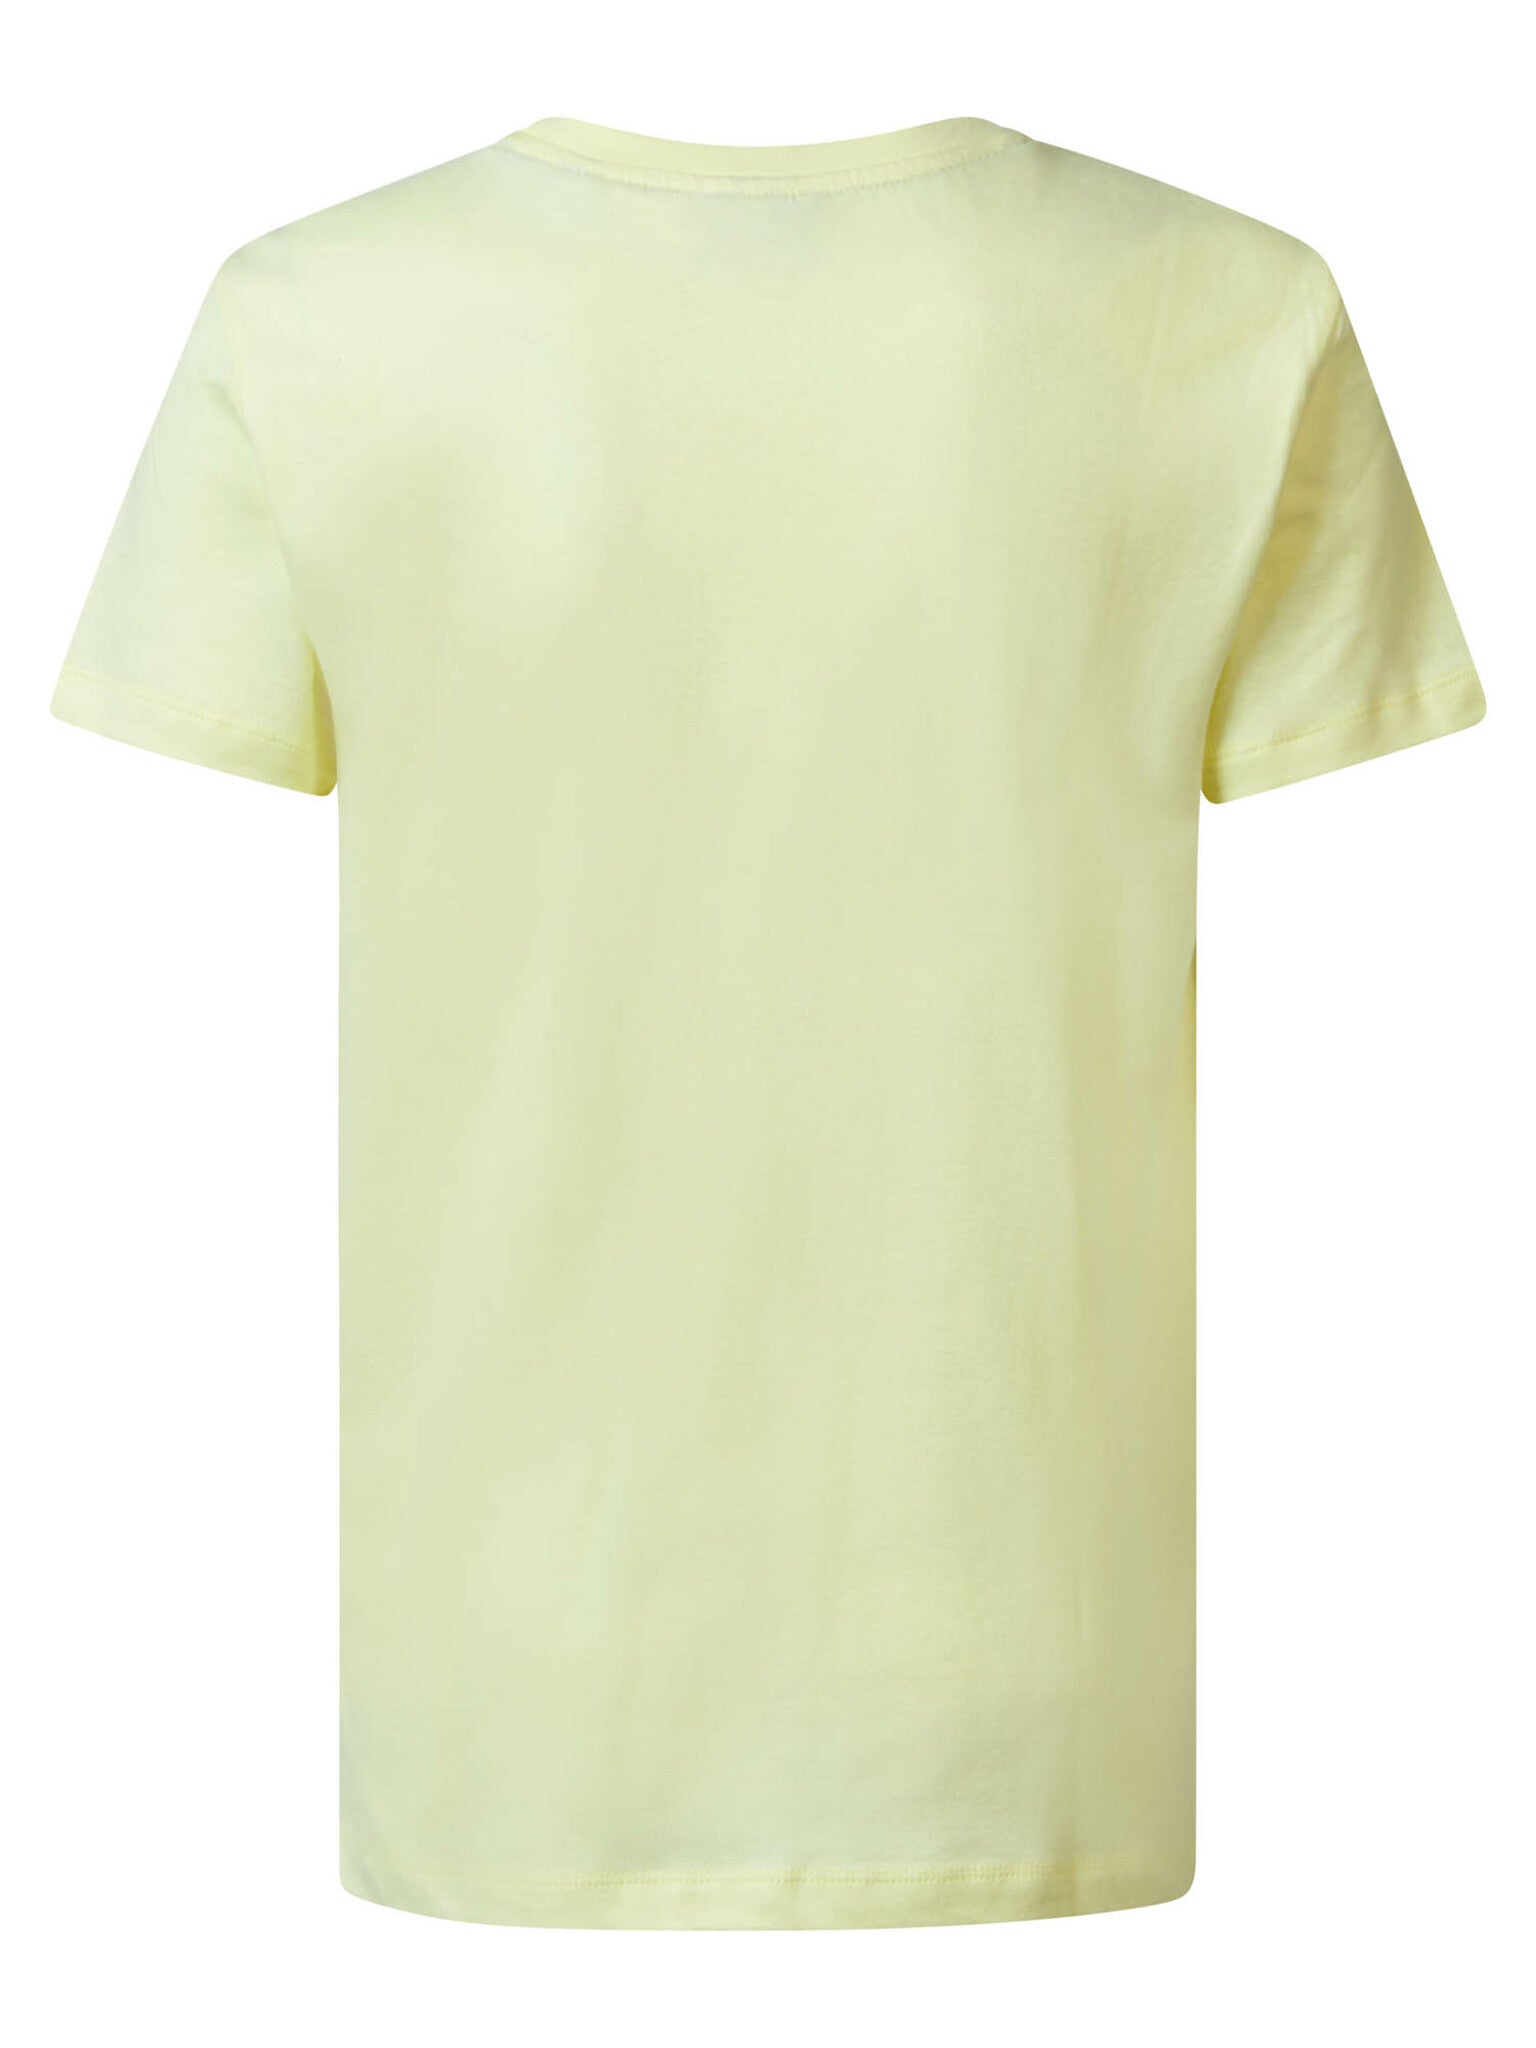 Jongens Boys T-Shirt SS Round Neck van Petrol in de kleur Lemon Yellow in maat 176.